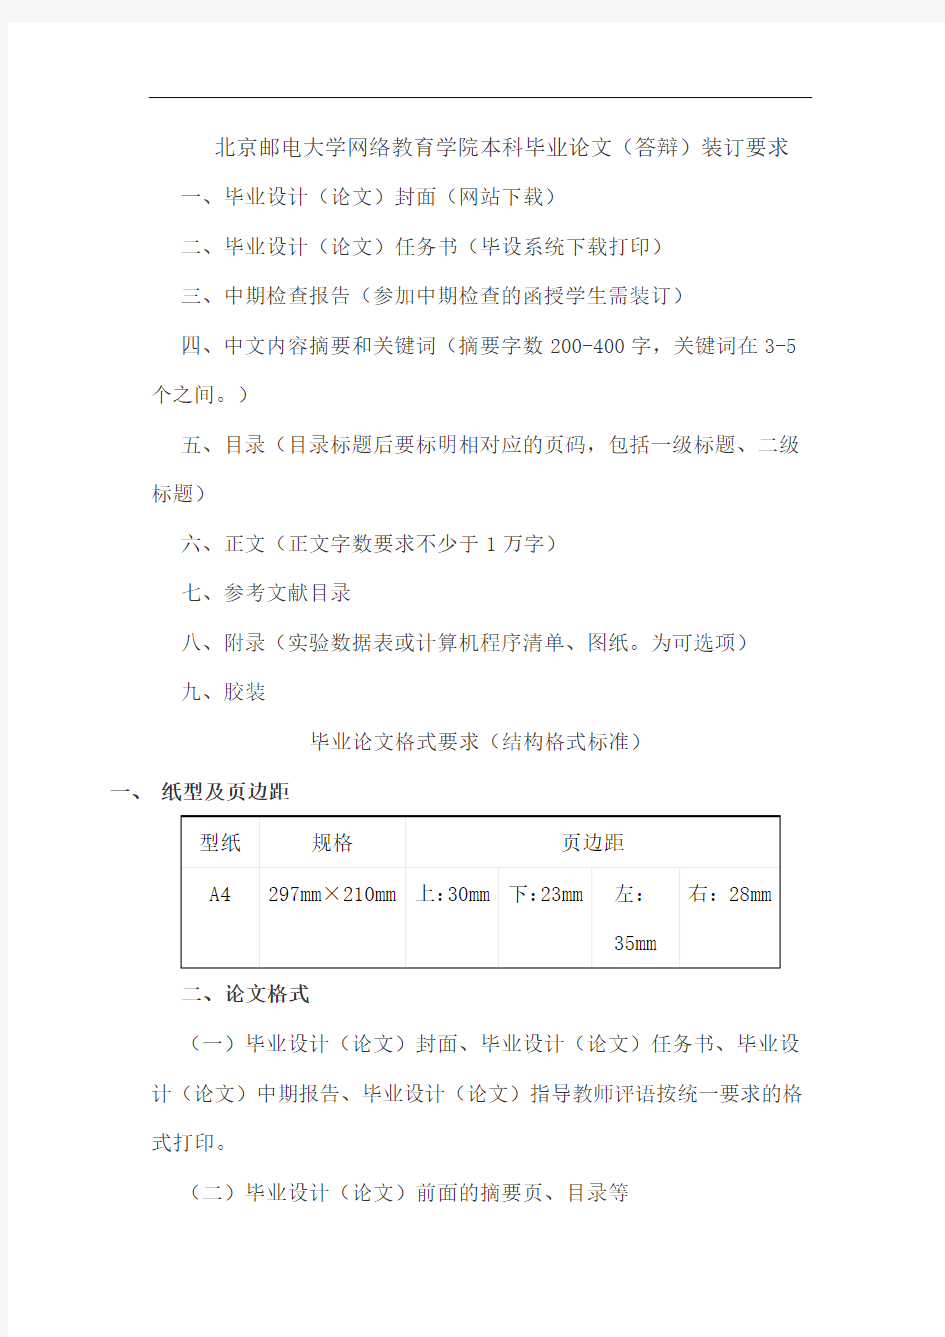 北京邮电大学网络教育学院本科毕业论文(答辩)装订要求